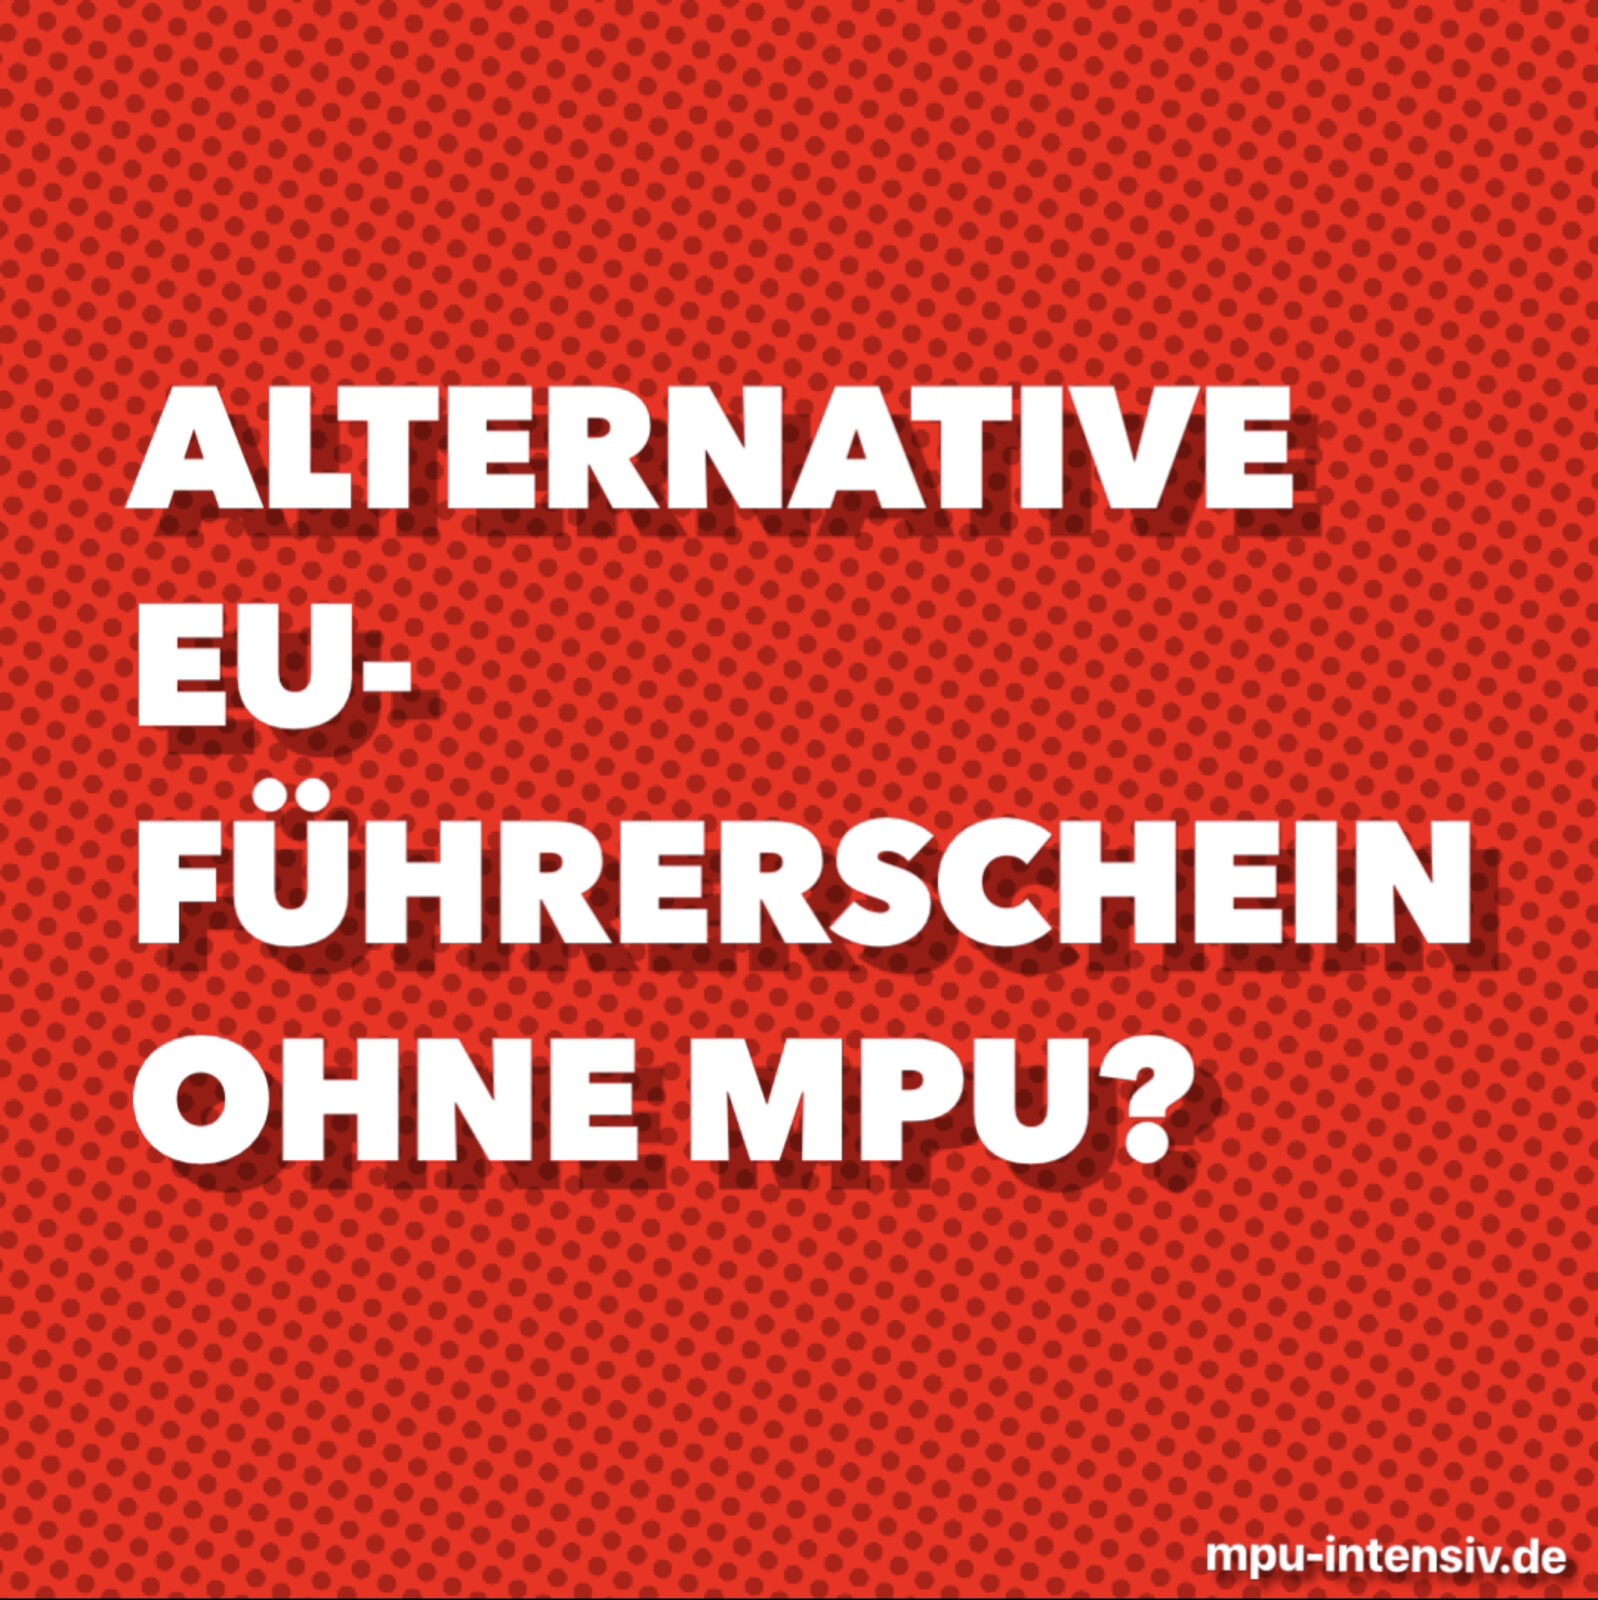 Bild: Alternative EU-Führerschein ohne MPU?